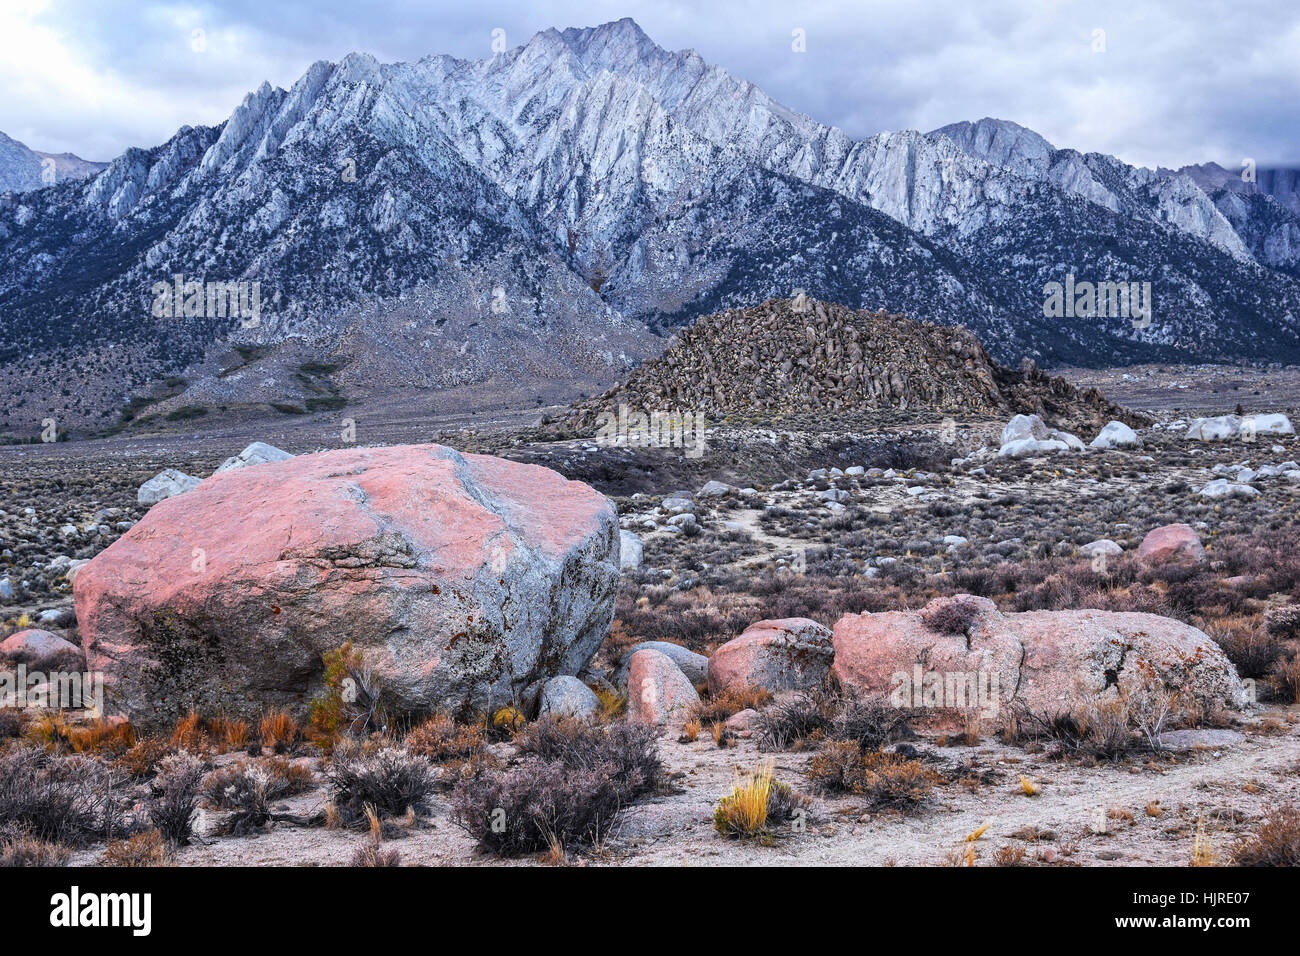 Les montagnes de la Sierra Nevada à Alabama Hills, près de la ville de Lone Pine, en Californie, aux États-Unis. Rochers en premier plan rouge couverte de micro-organismes. Banque D'Images